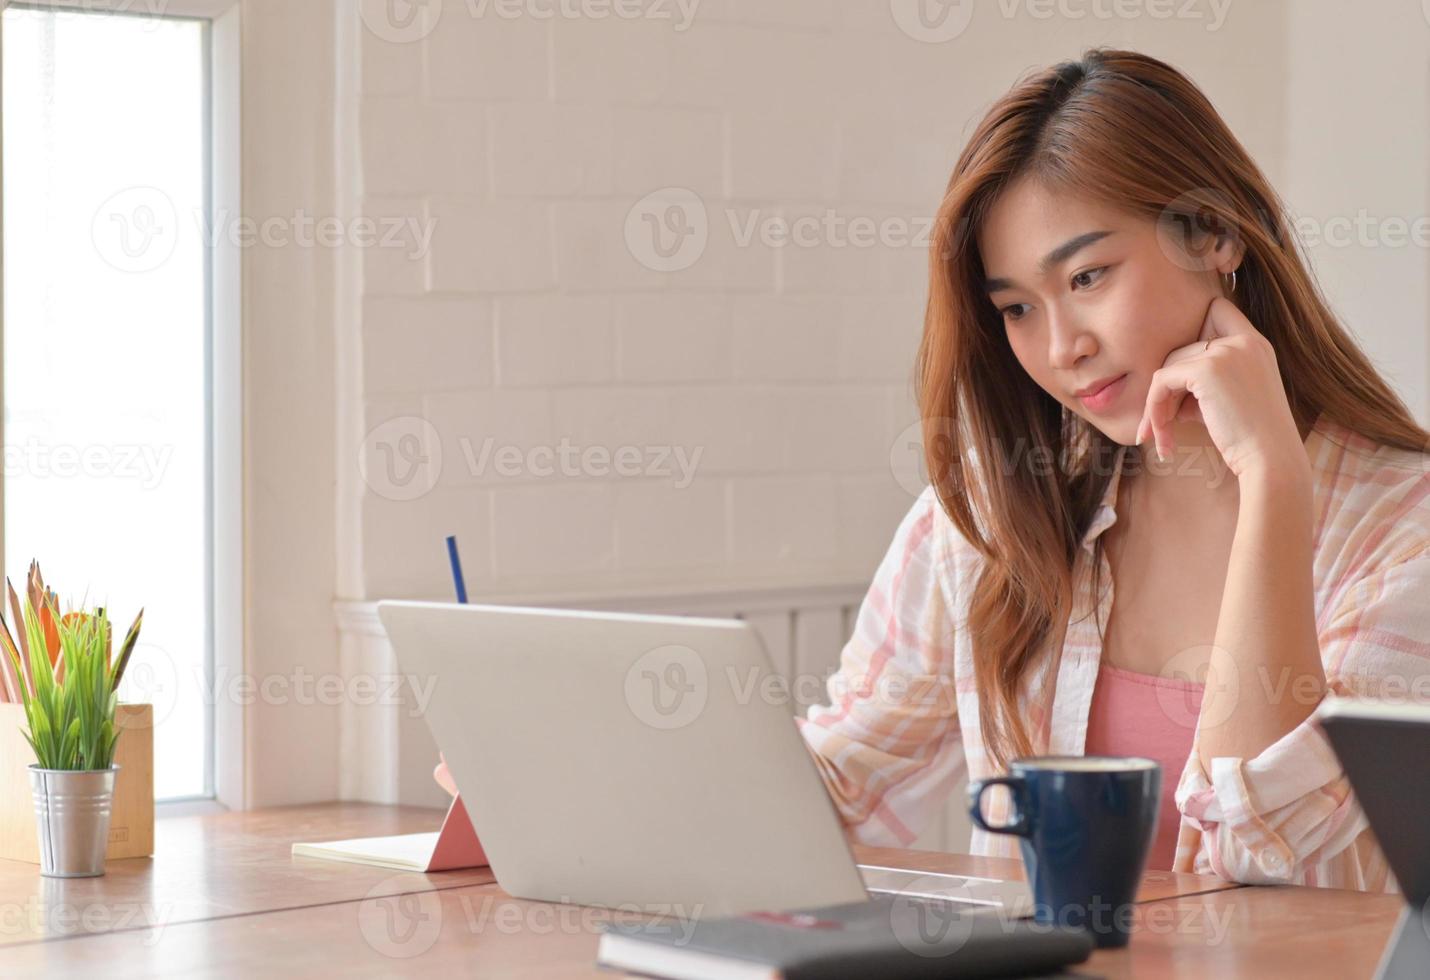 foto recortada de estudante adolescente está estudando online em casa com um laptop.